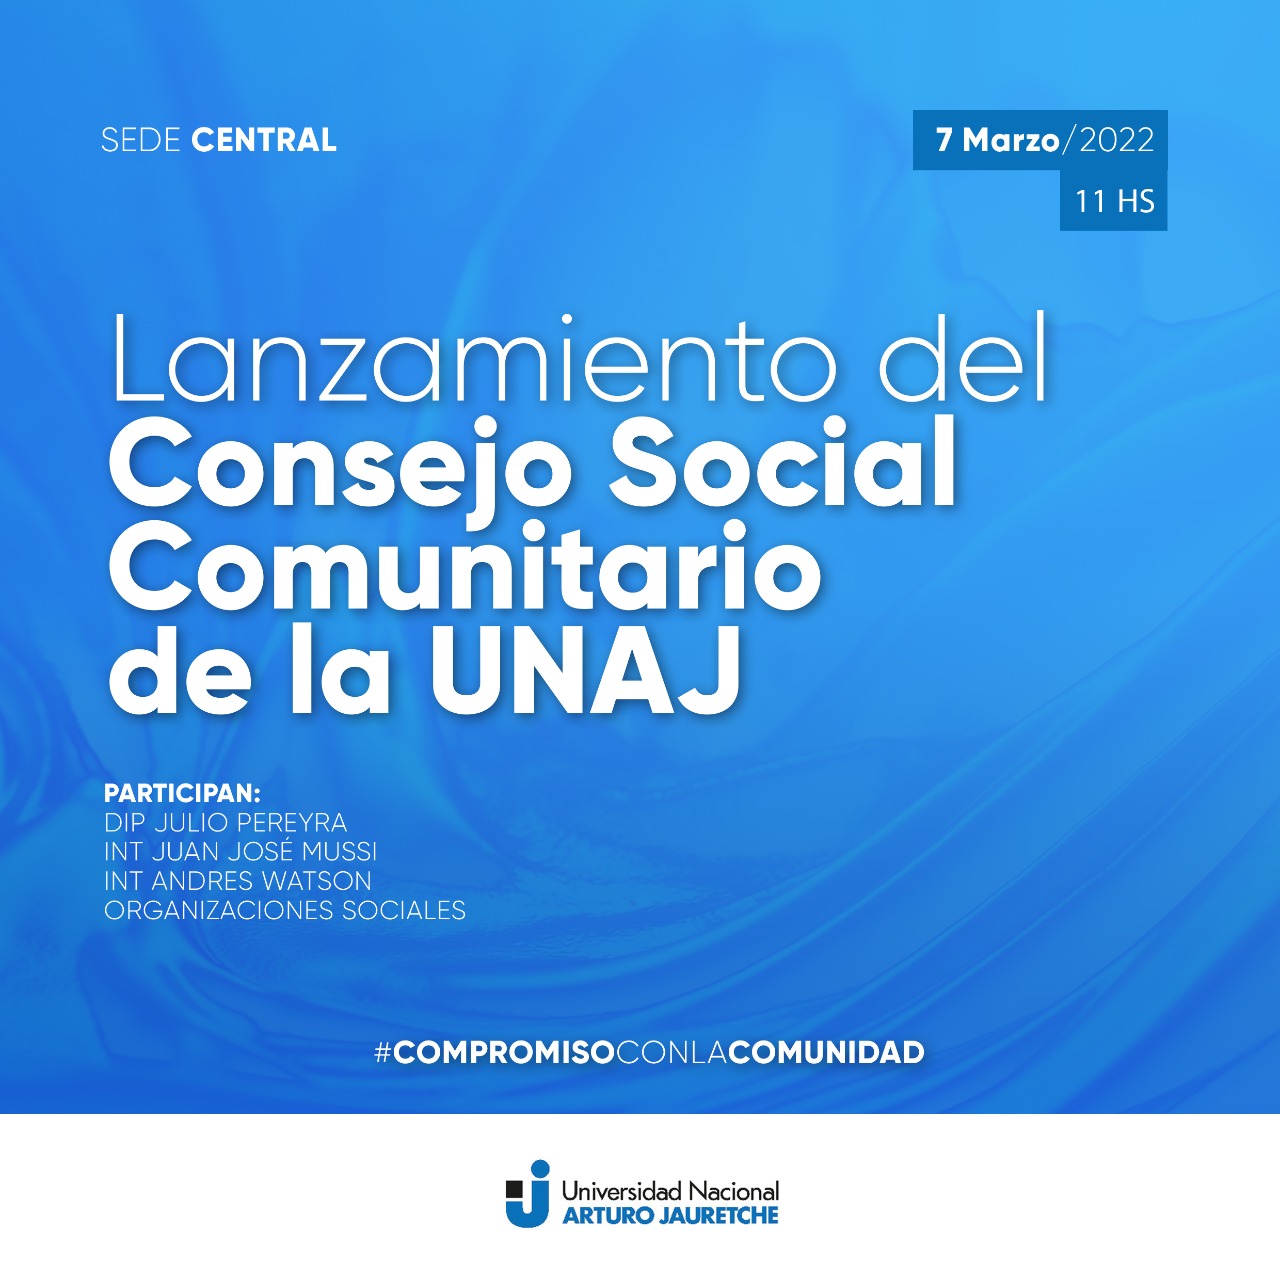 Se Lanza El Consejo Social Comunitario De La UNAJ